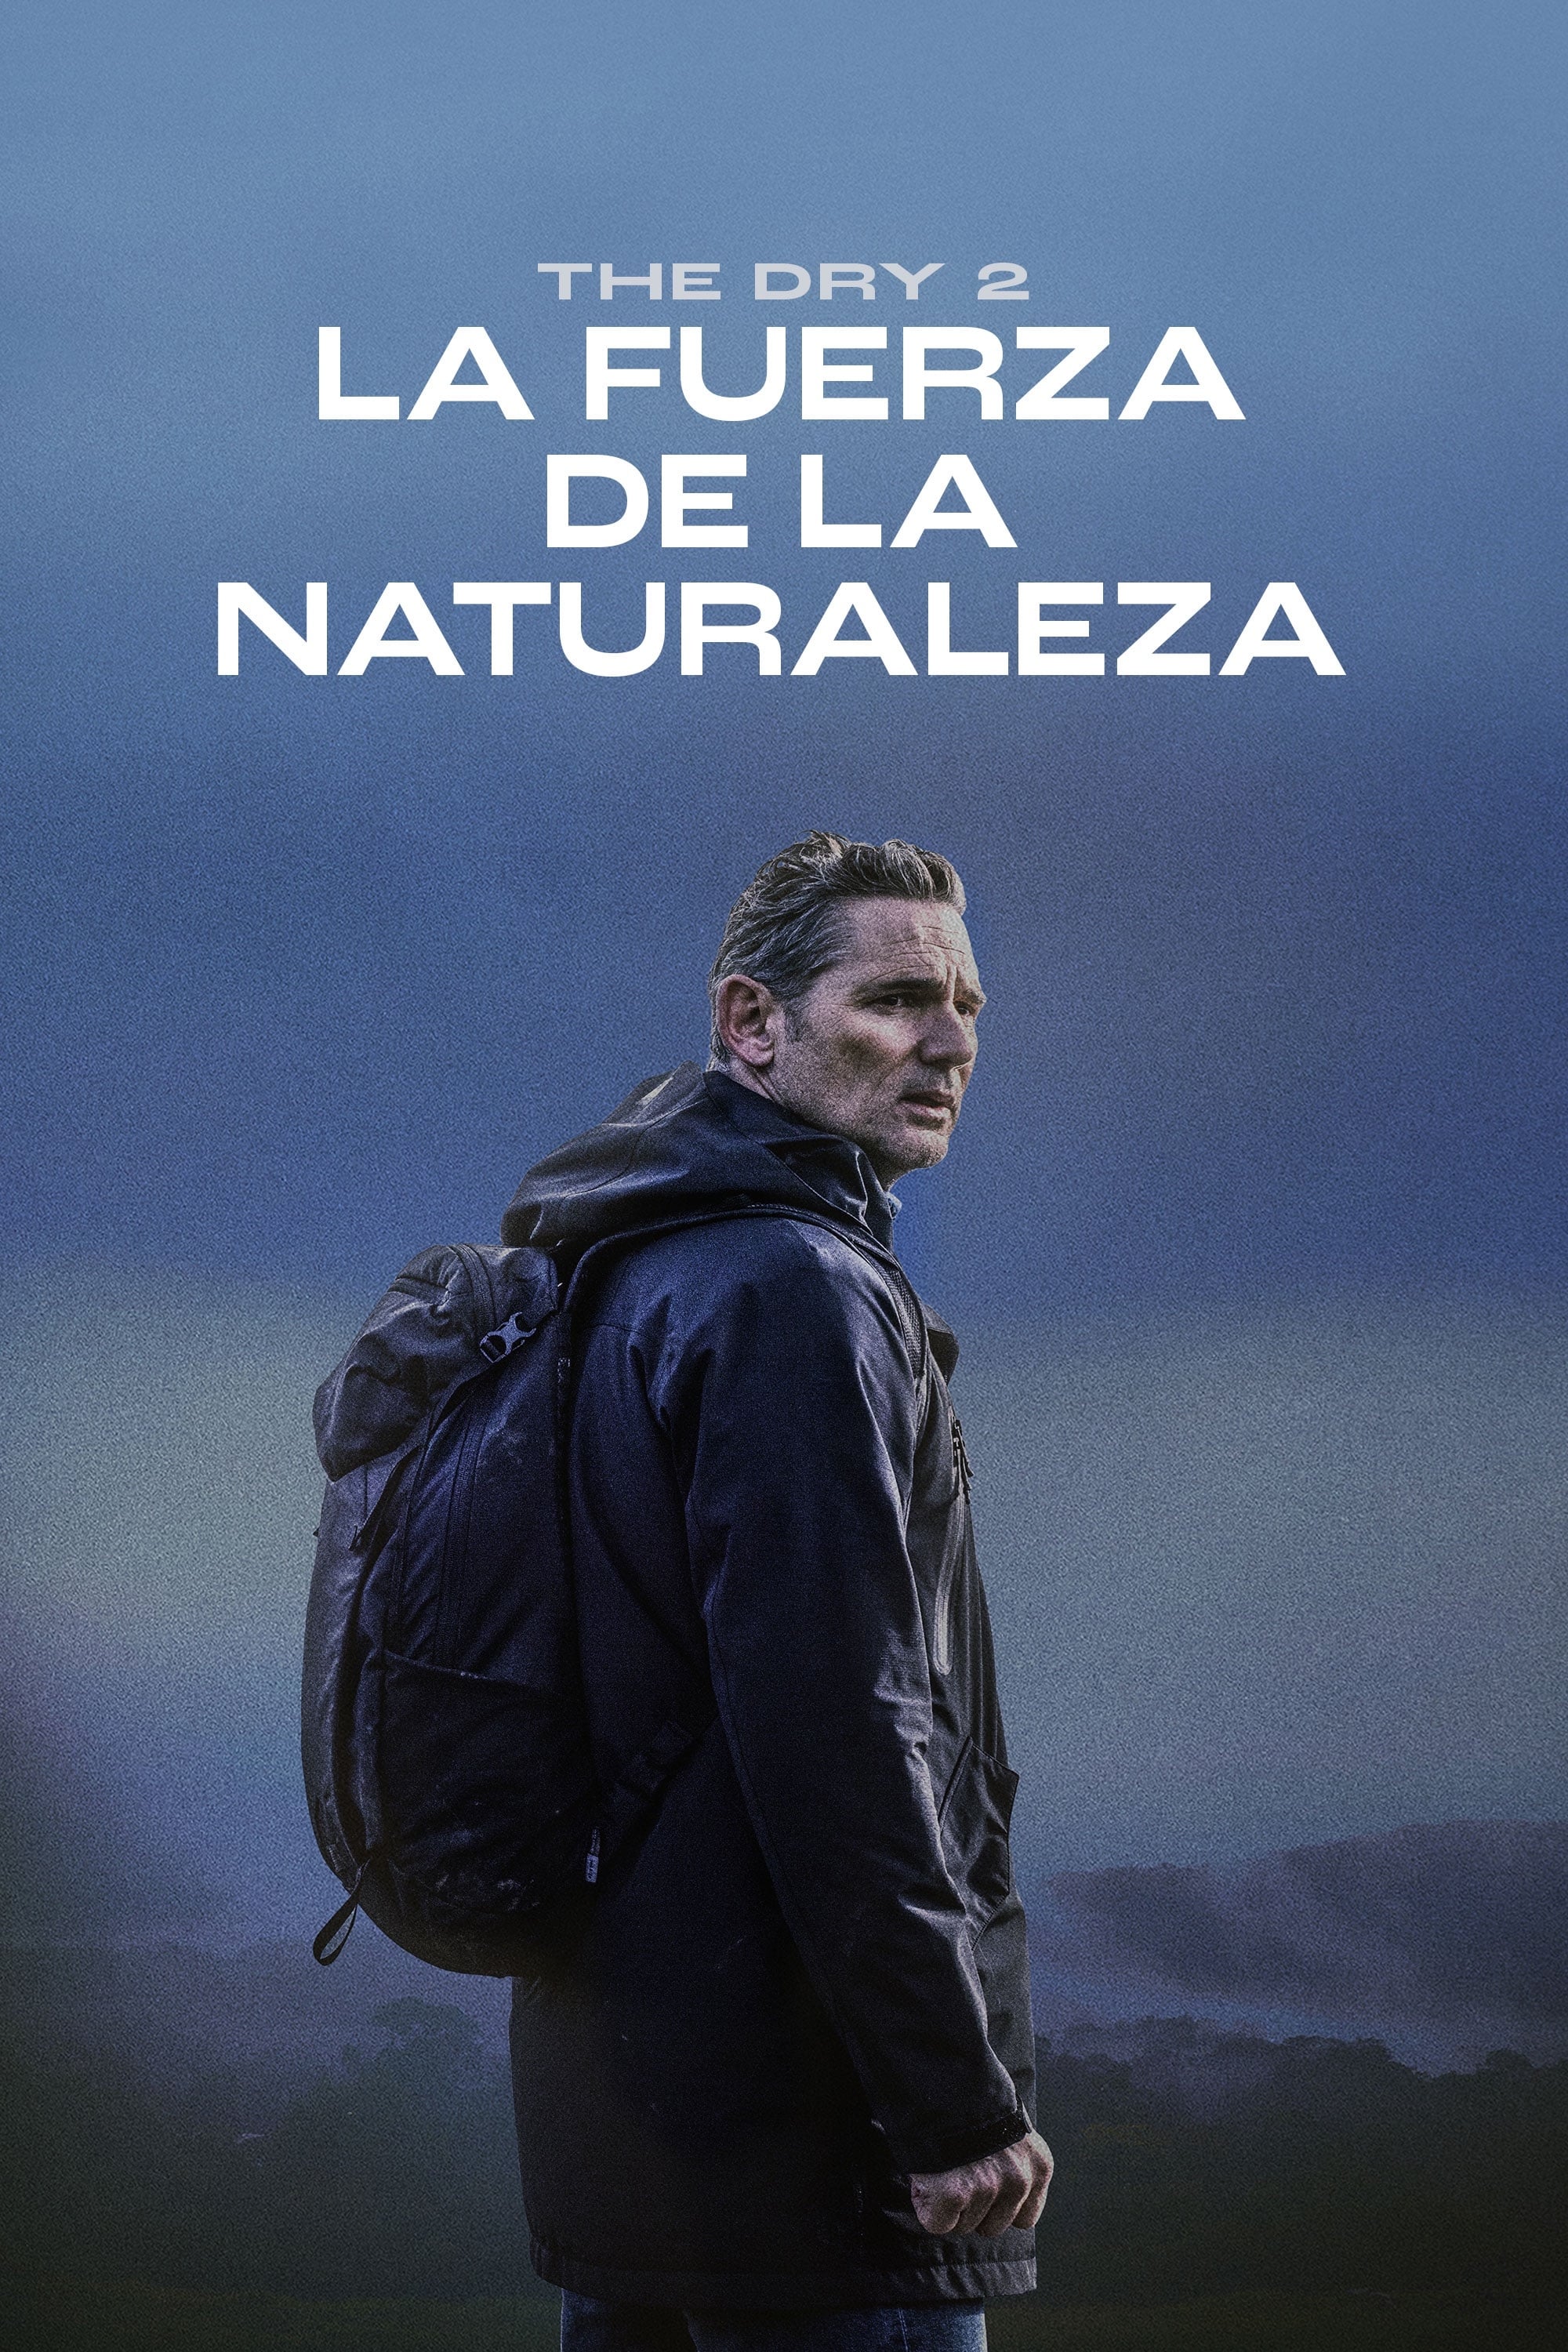 Poster de The dry 2: La fuerza de la naturaleza